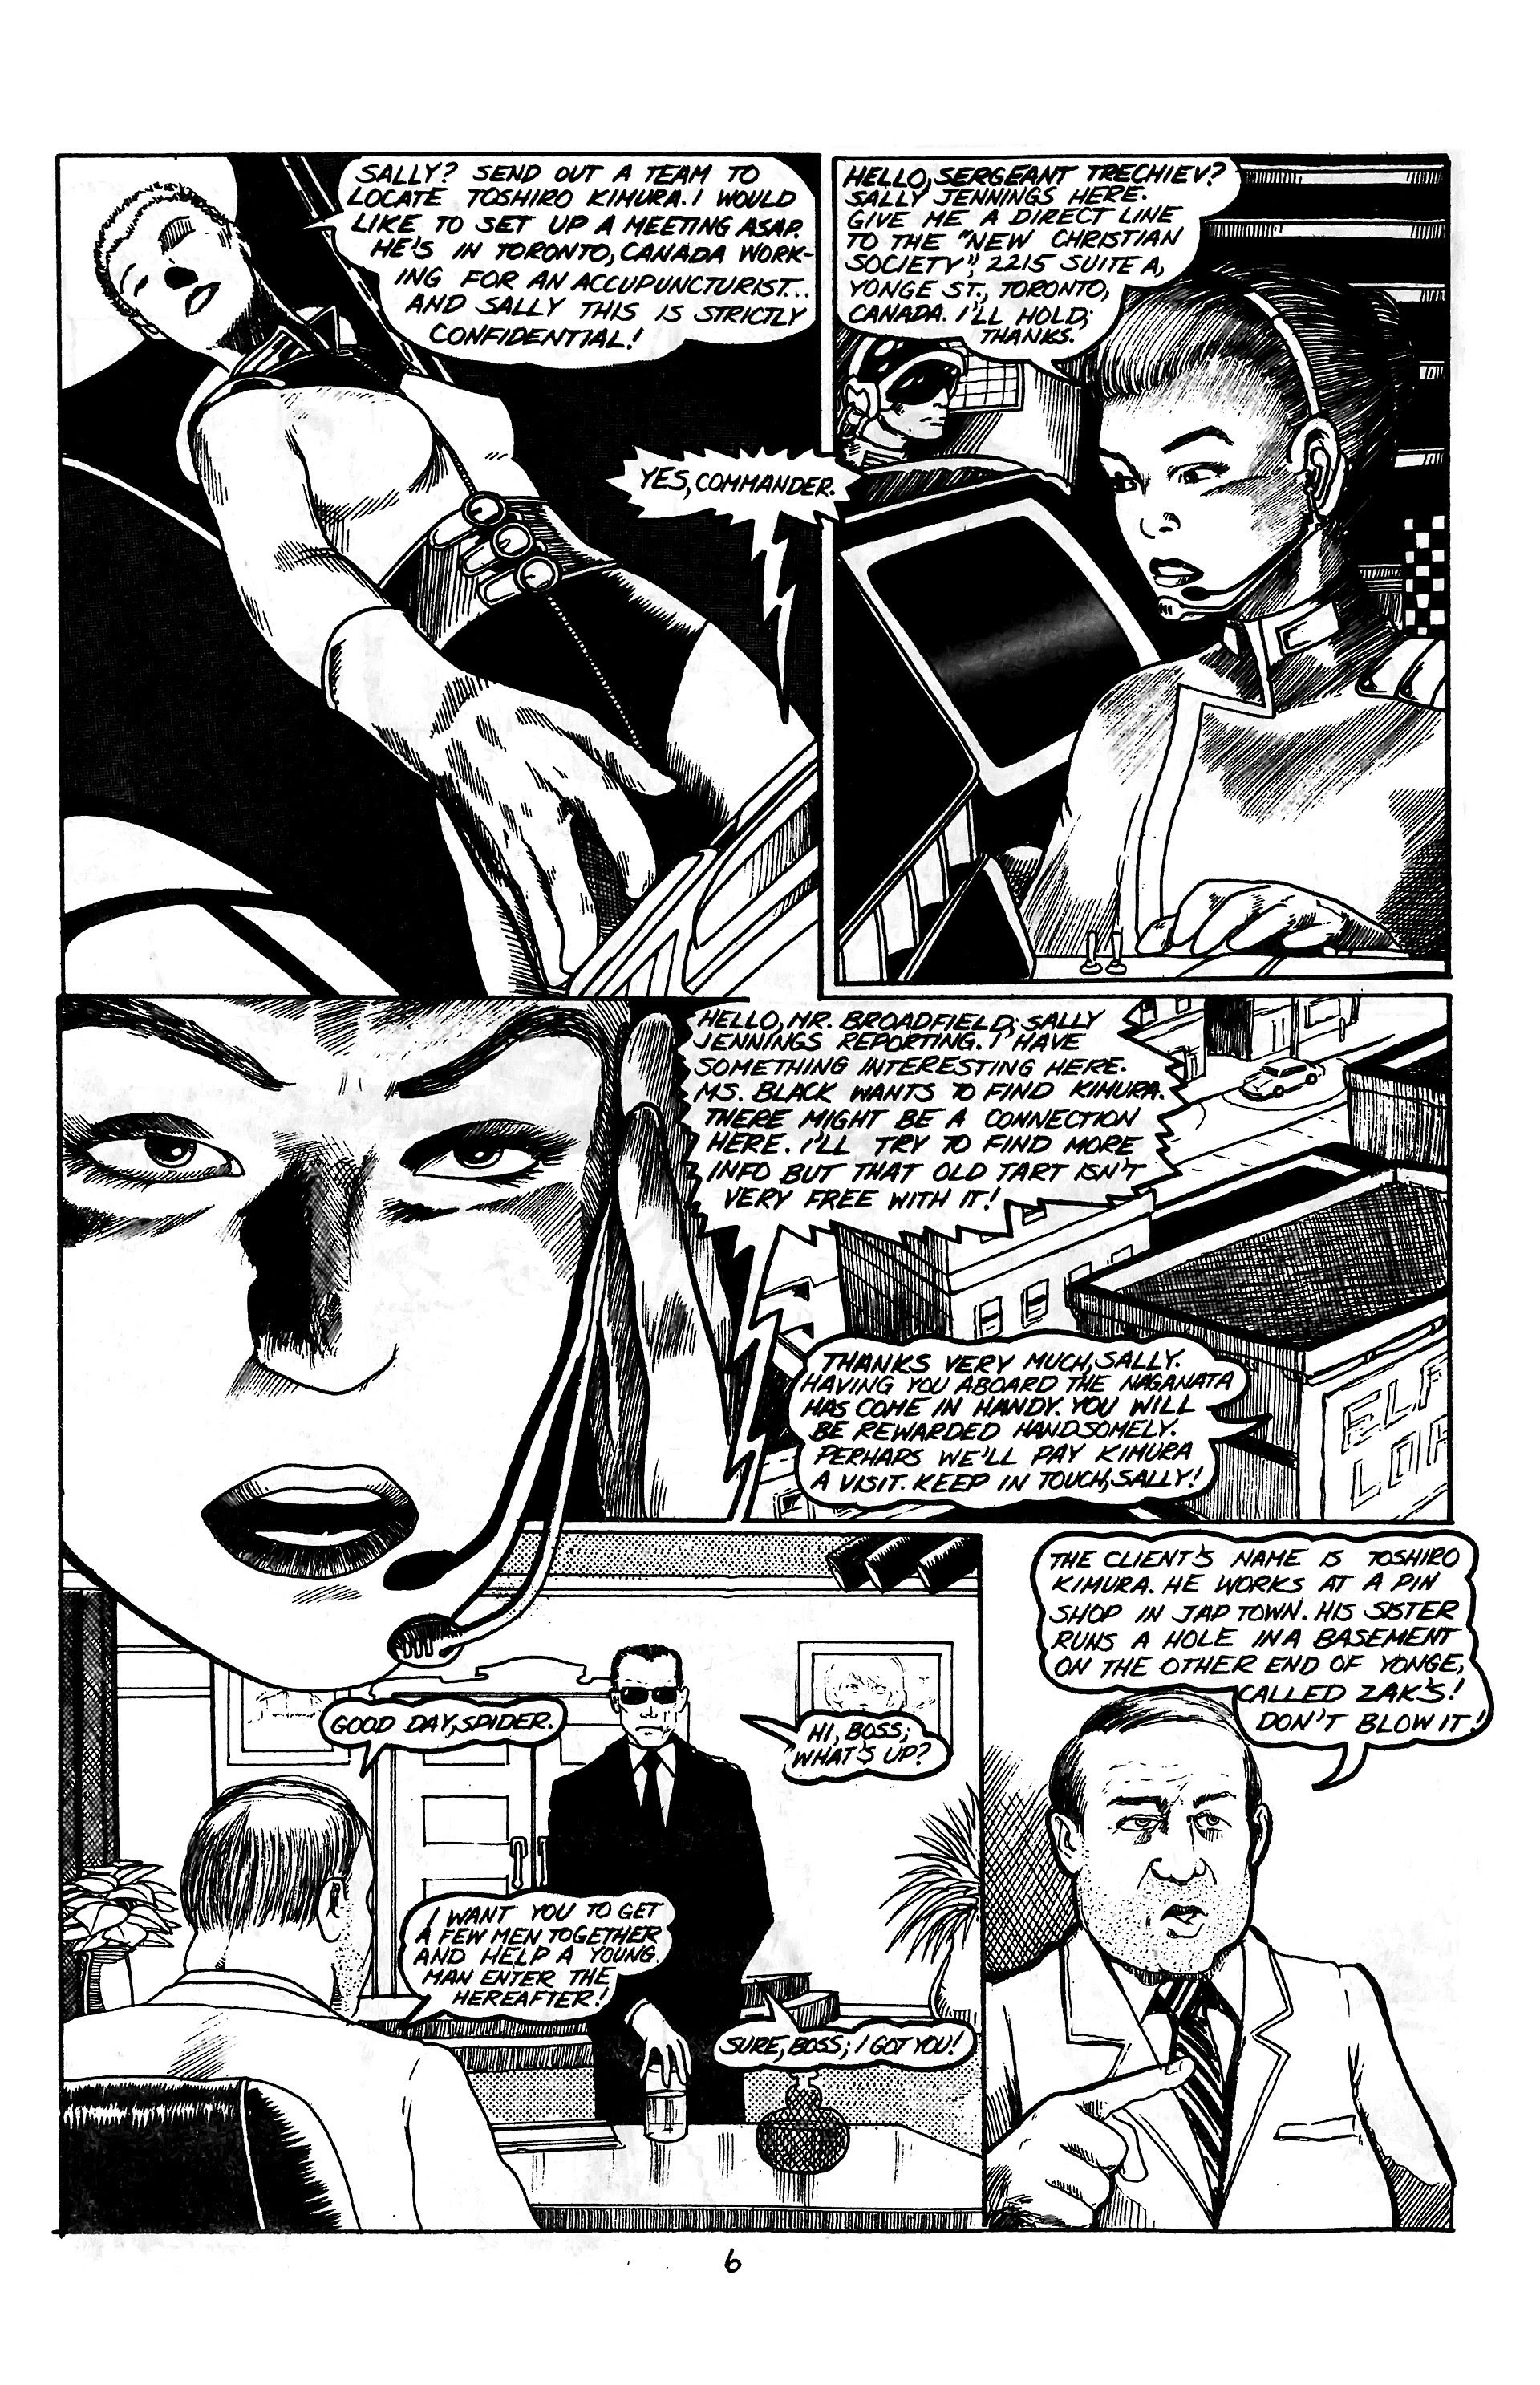 Read online Samurai comic -  Issue #1 - 8